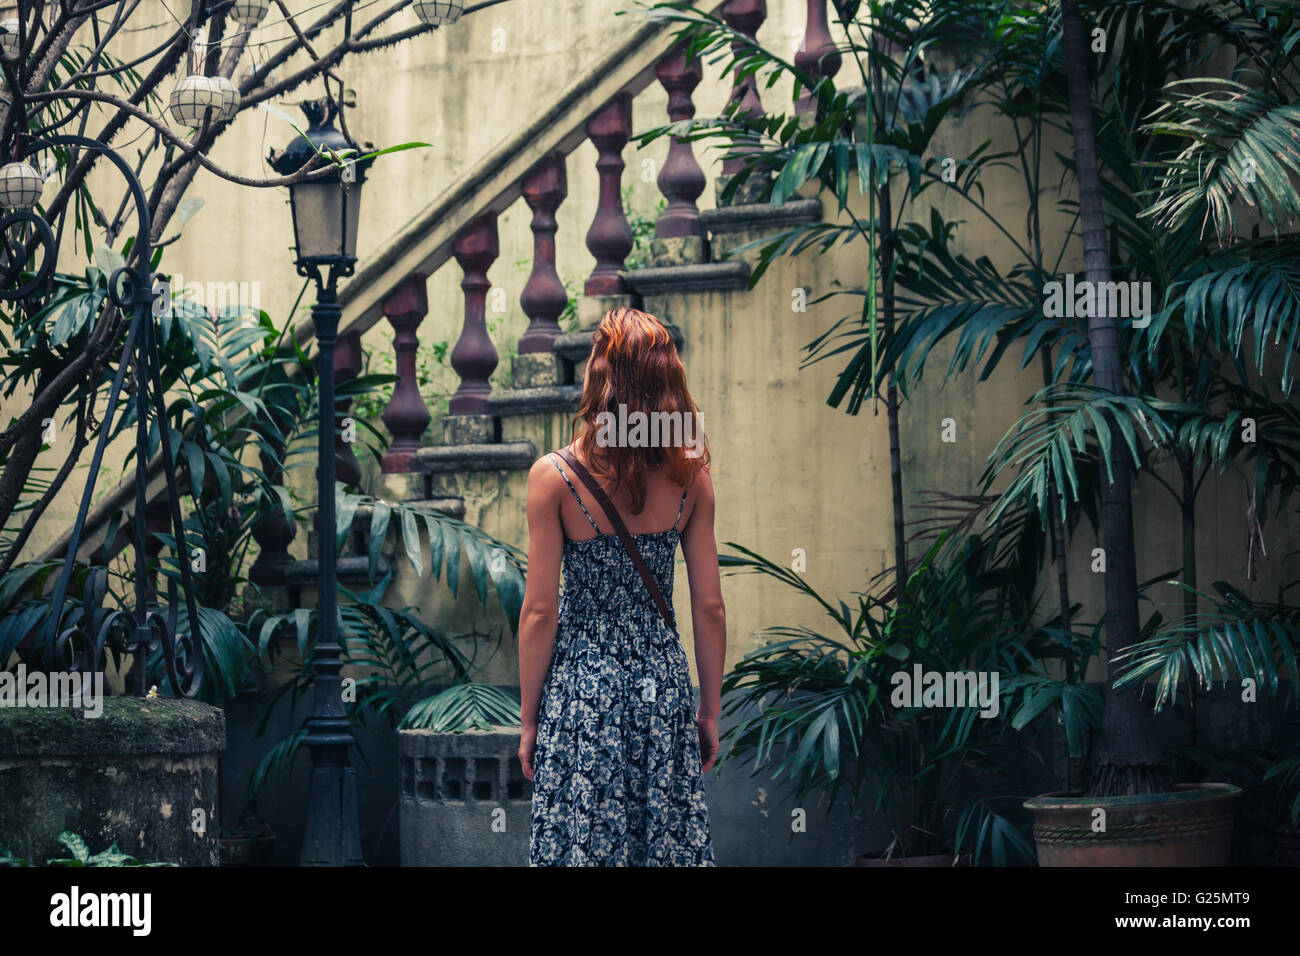 Una giovane donna è ammirando una vecchia scala coloniale in un cortile Foto Stock